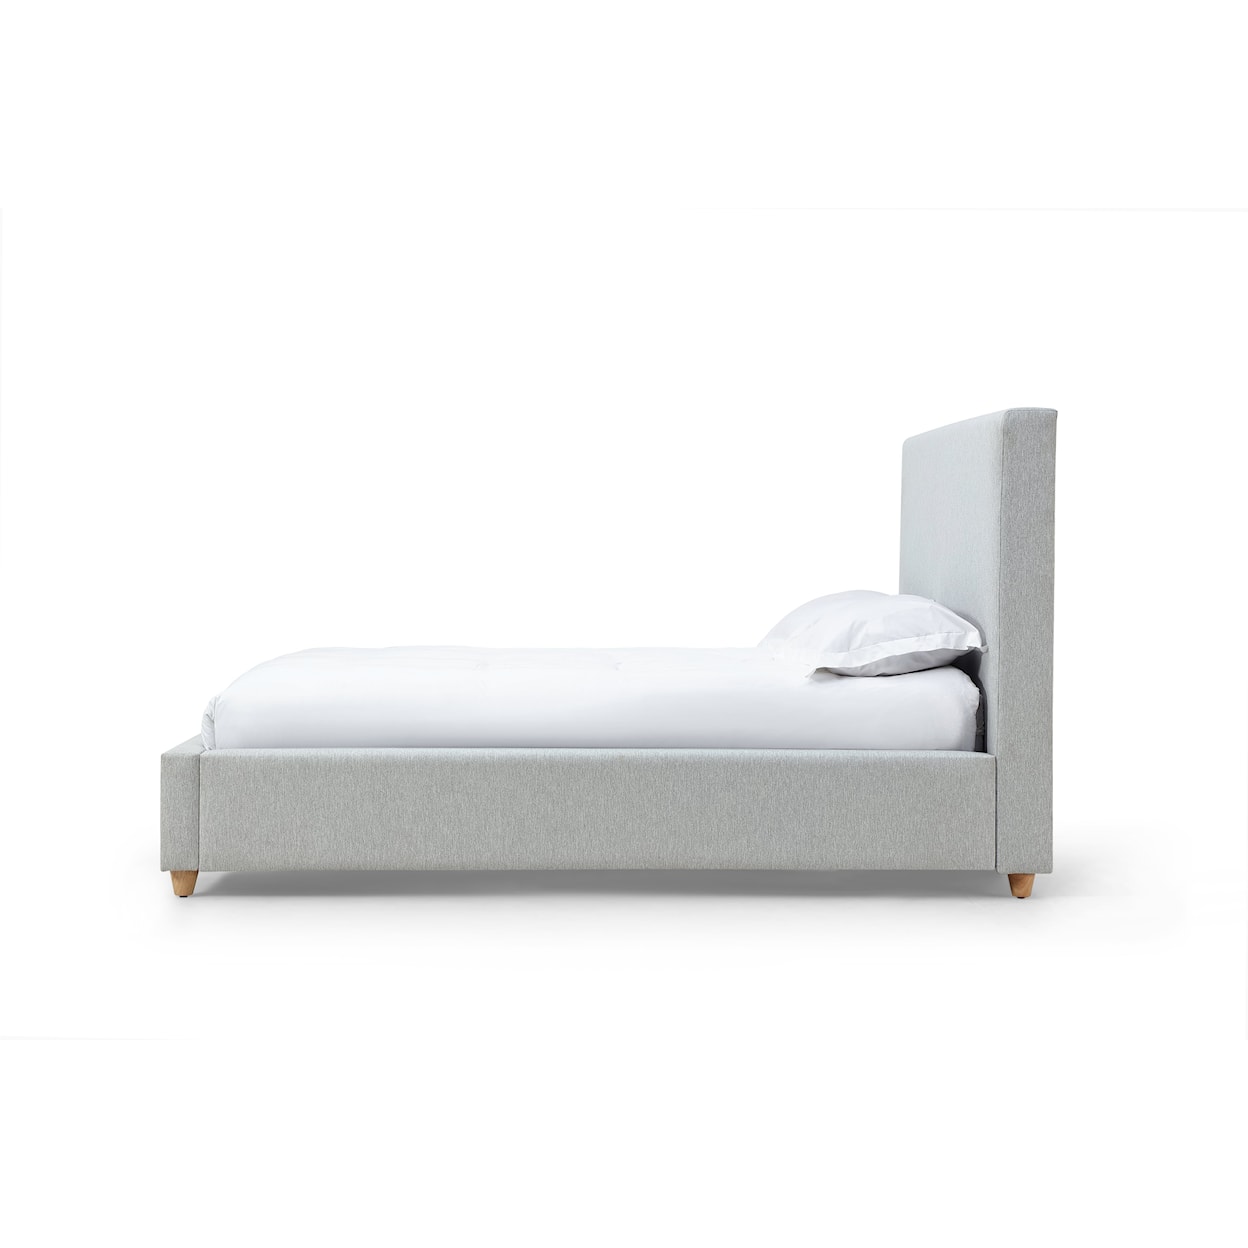 Modus International Olivia Queen Upholstered Platform Bed